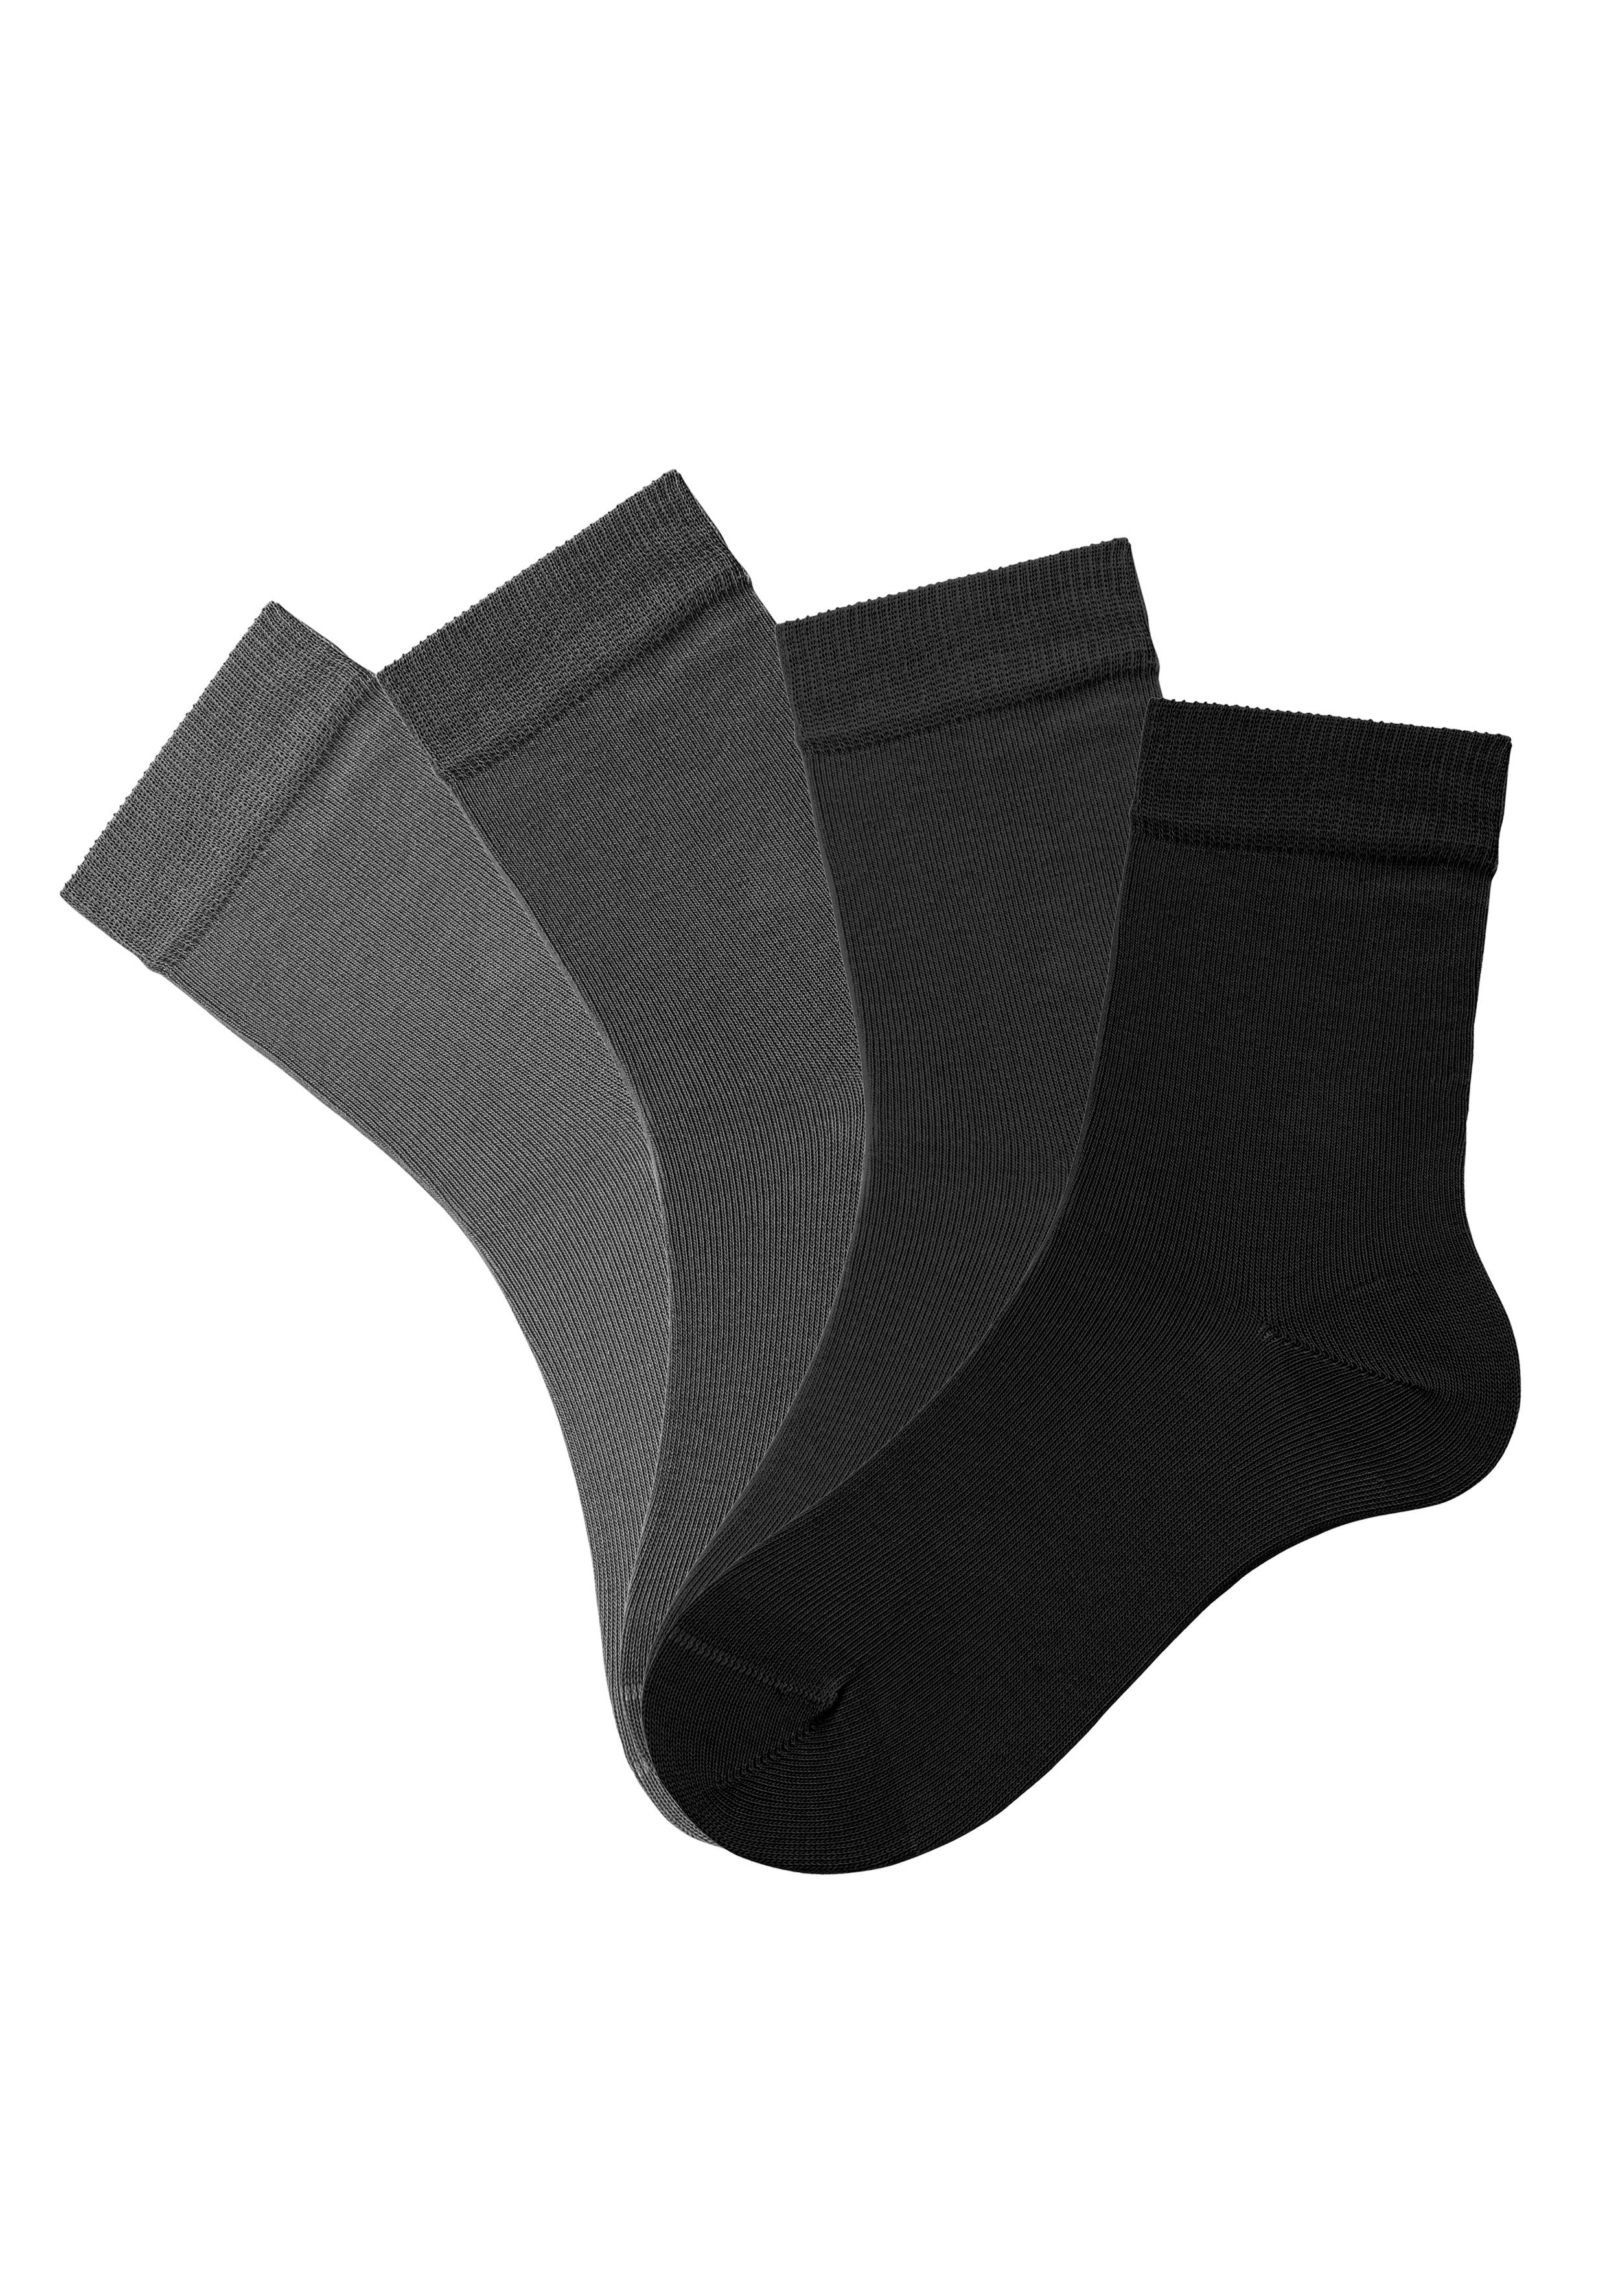 H.I.S Socken (Set, 4-Paar) 4x Farbzusammenstellungen in grau-schwarz unterschiedlichen